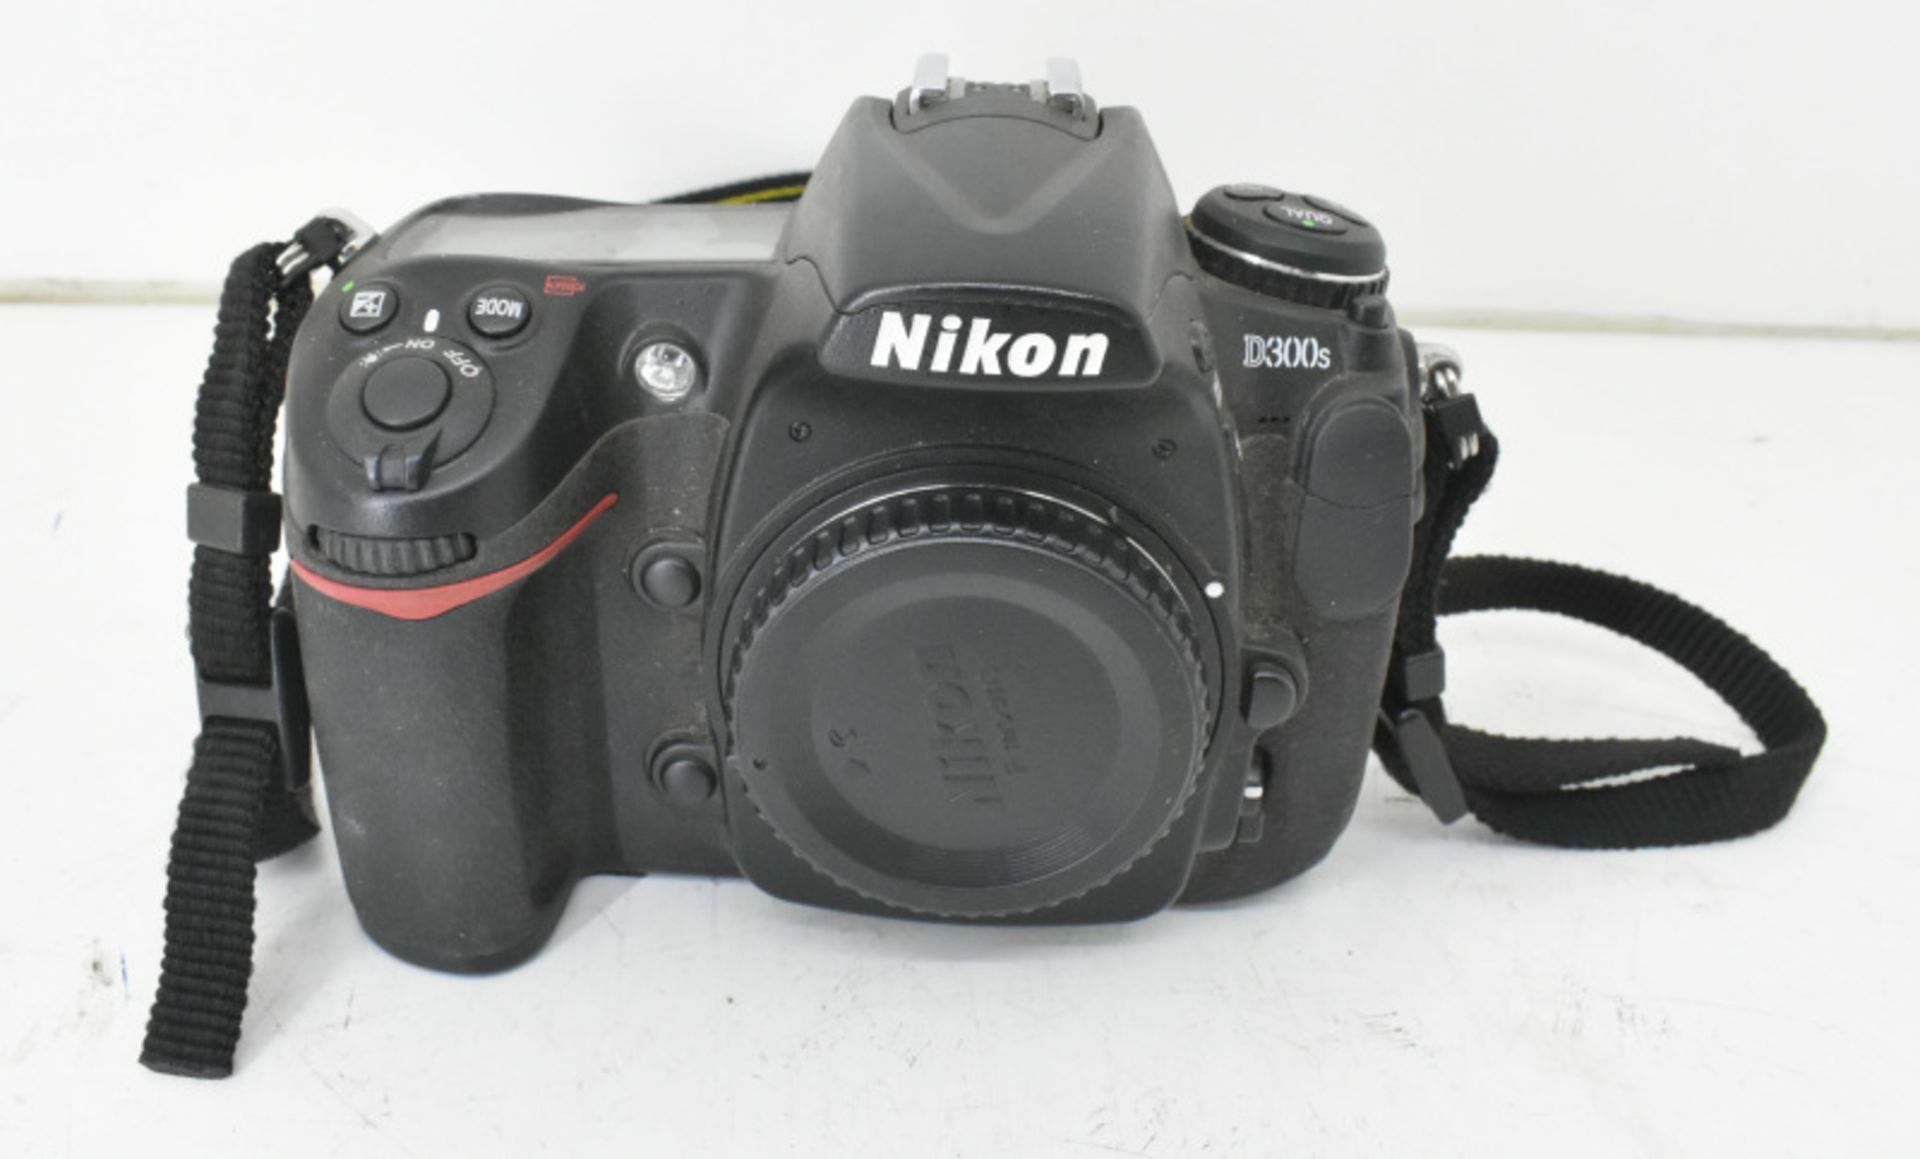 Nikon D300s SLR Digital Camera Body